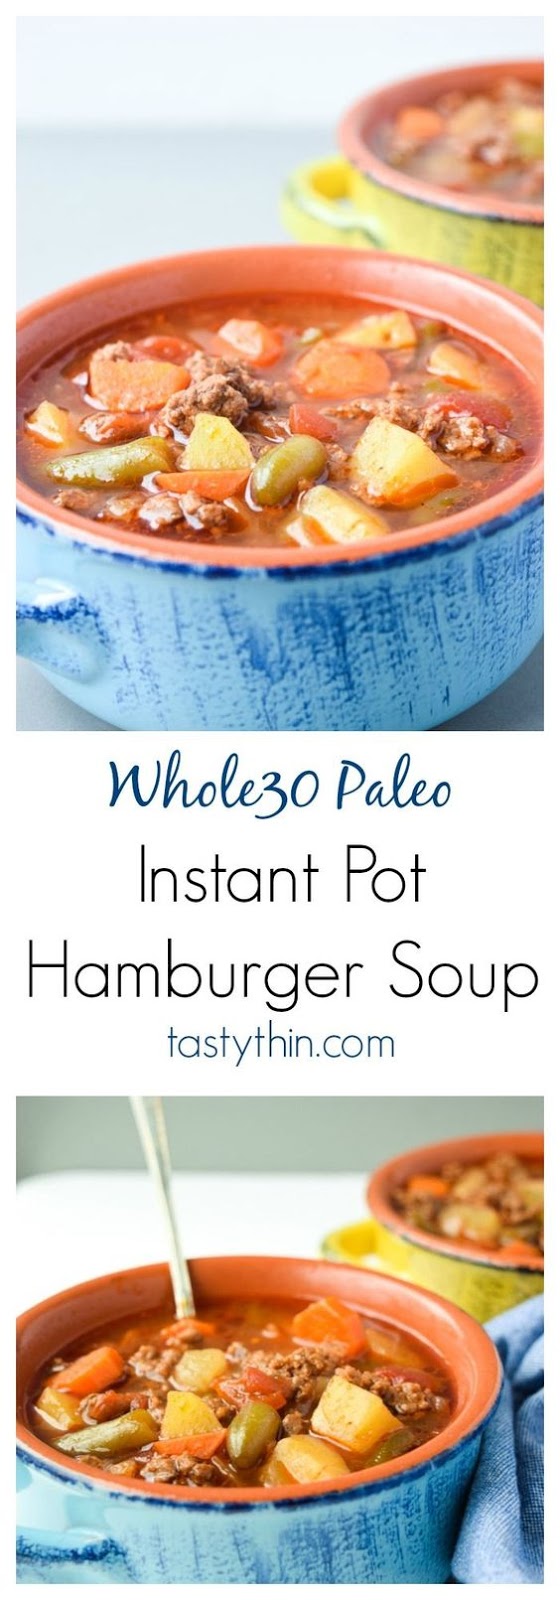 Instant Pot Hamburger Soup - POT